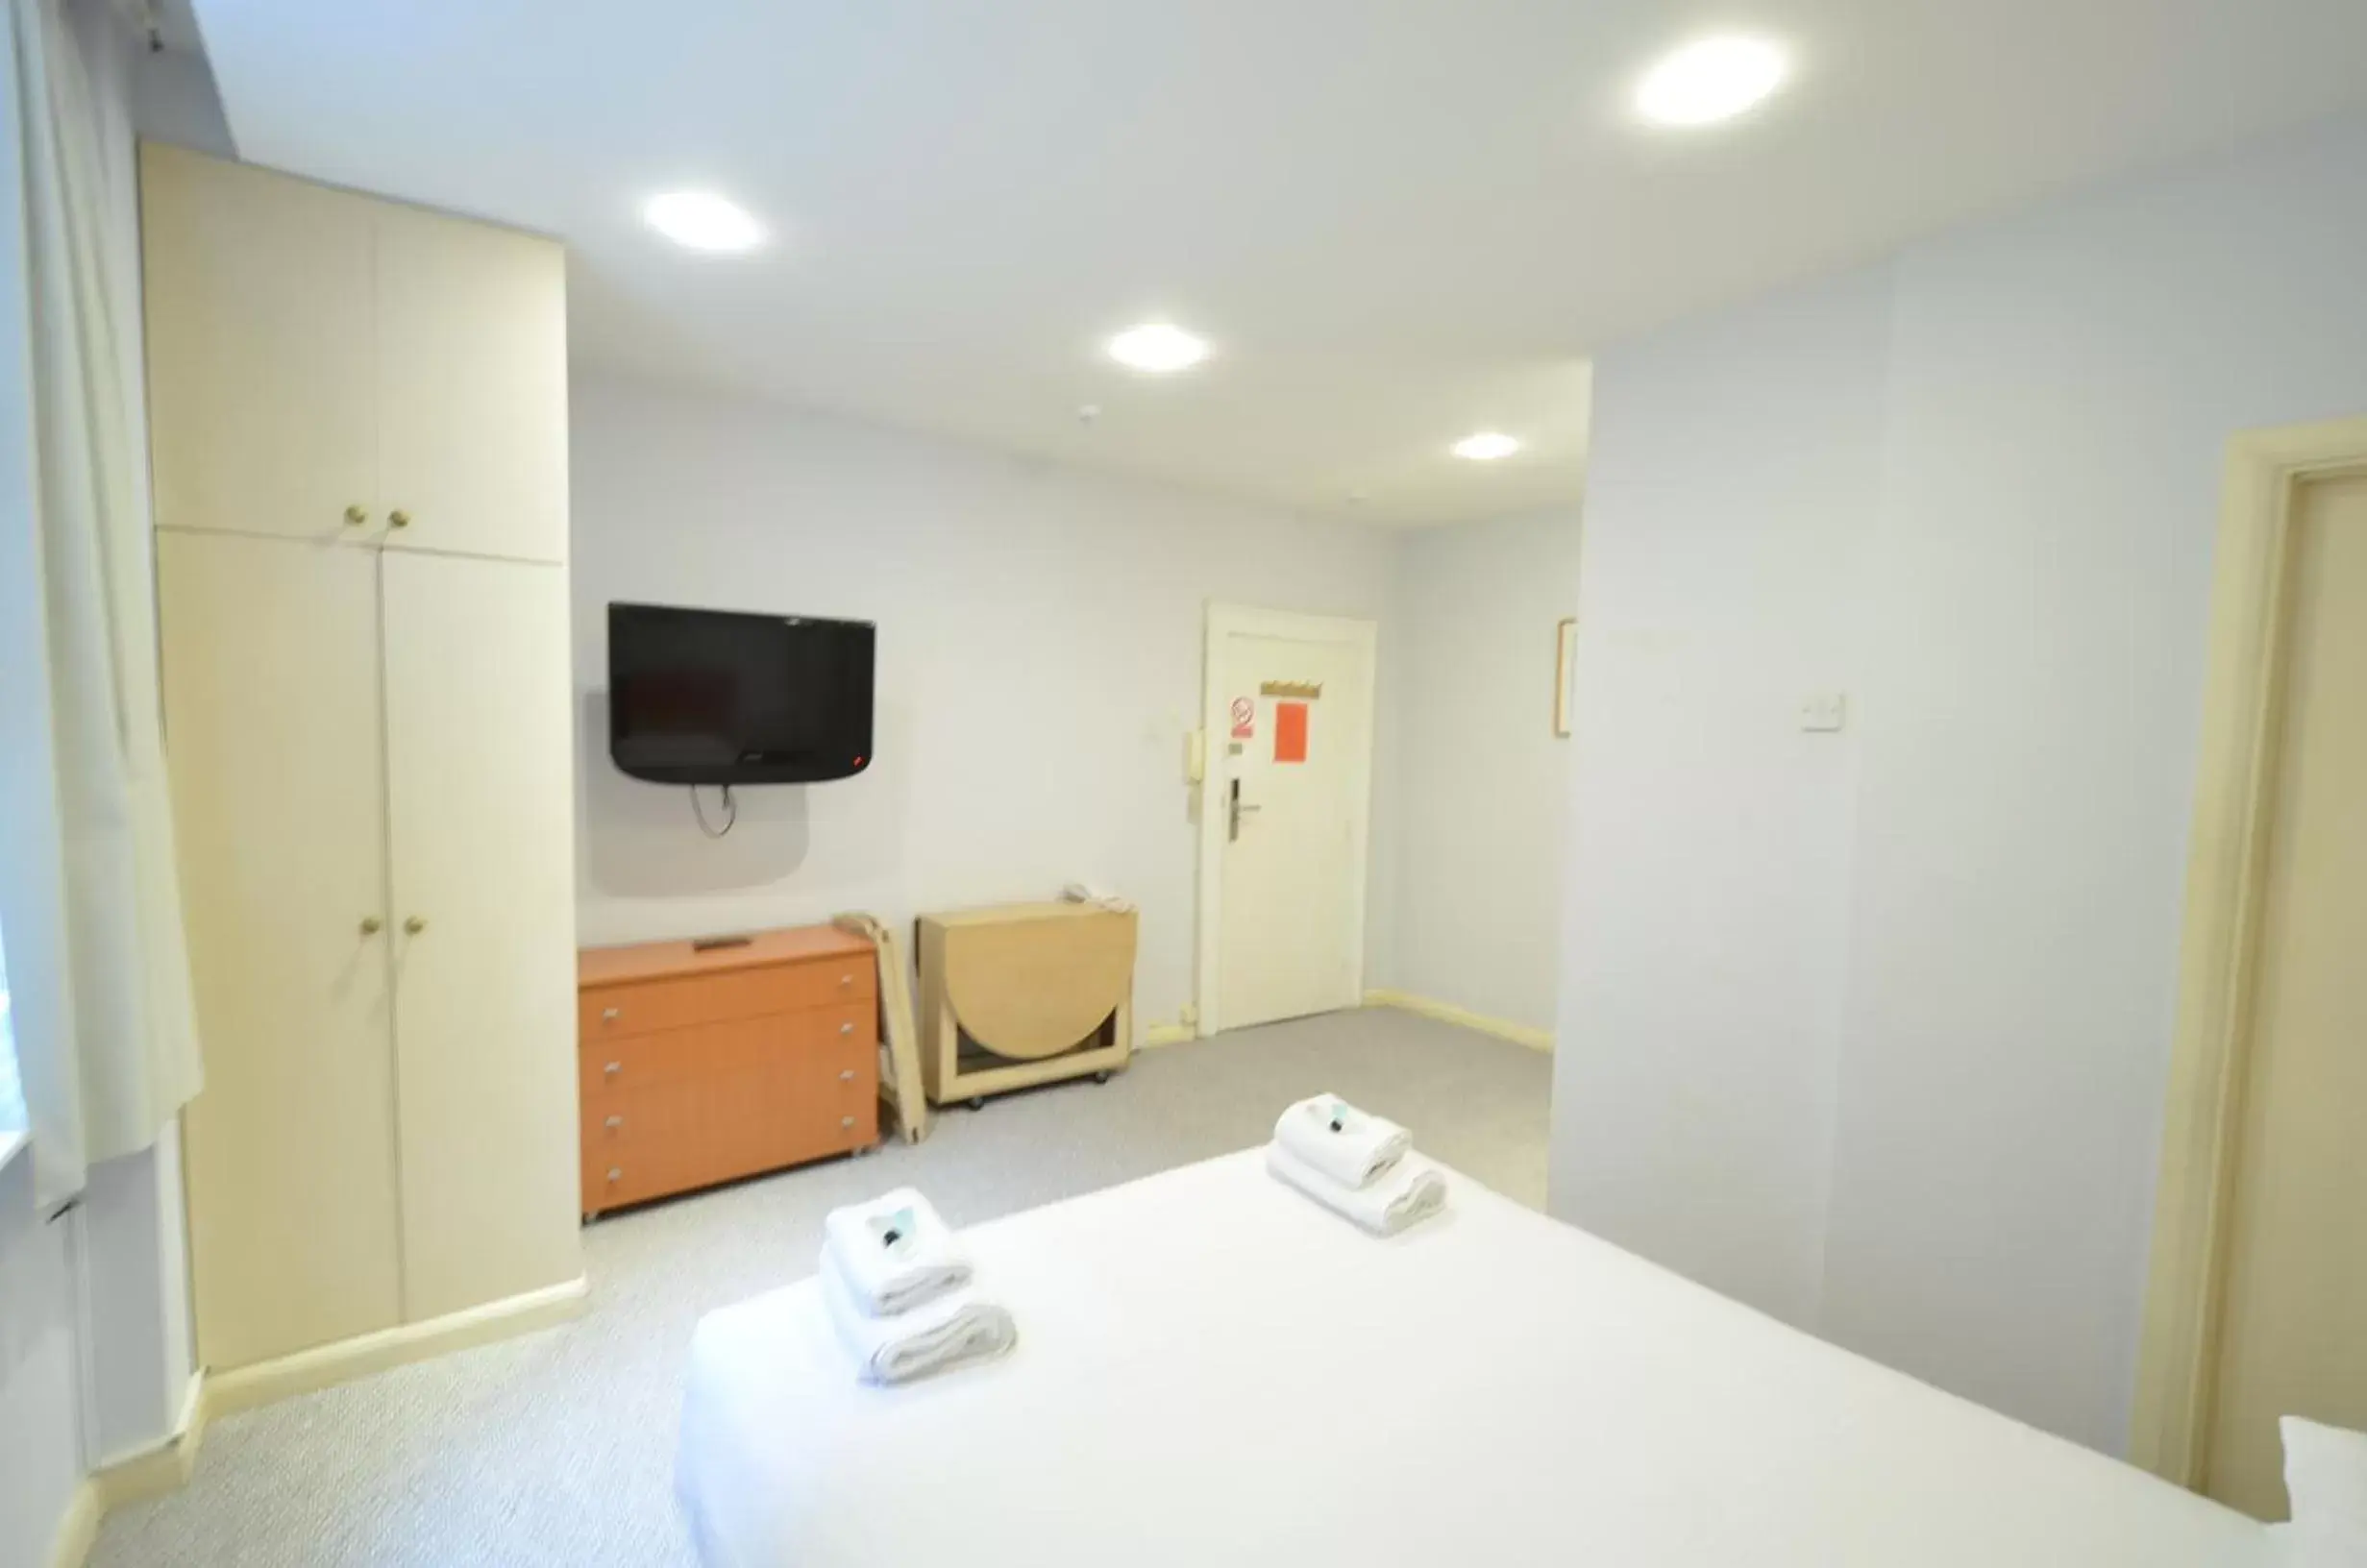 Bedroom, TV/Entertainment Center in Amber Residence Aparthotel